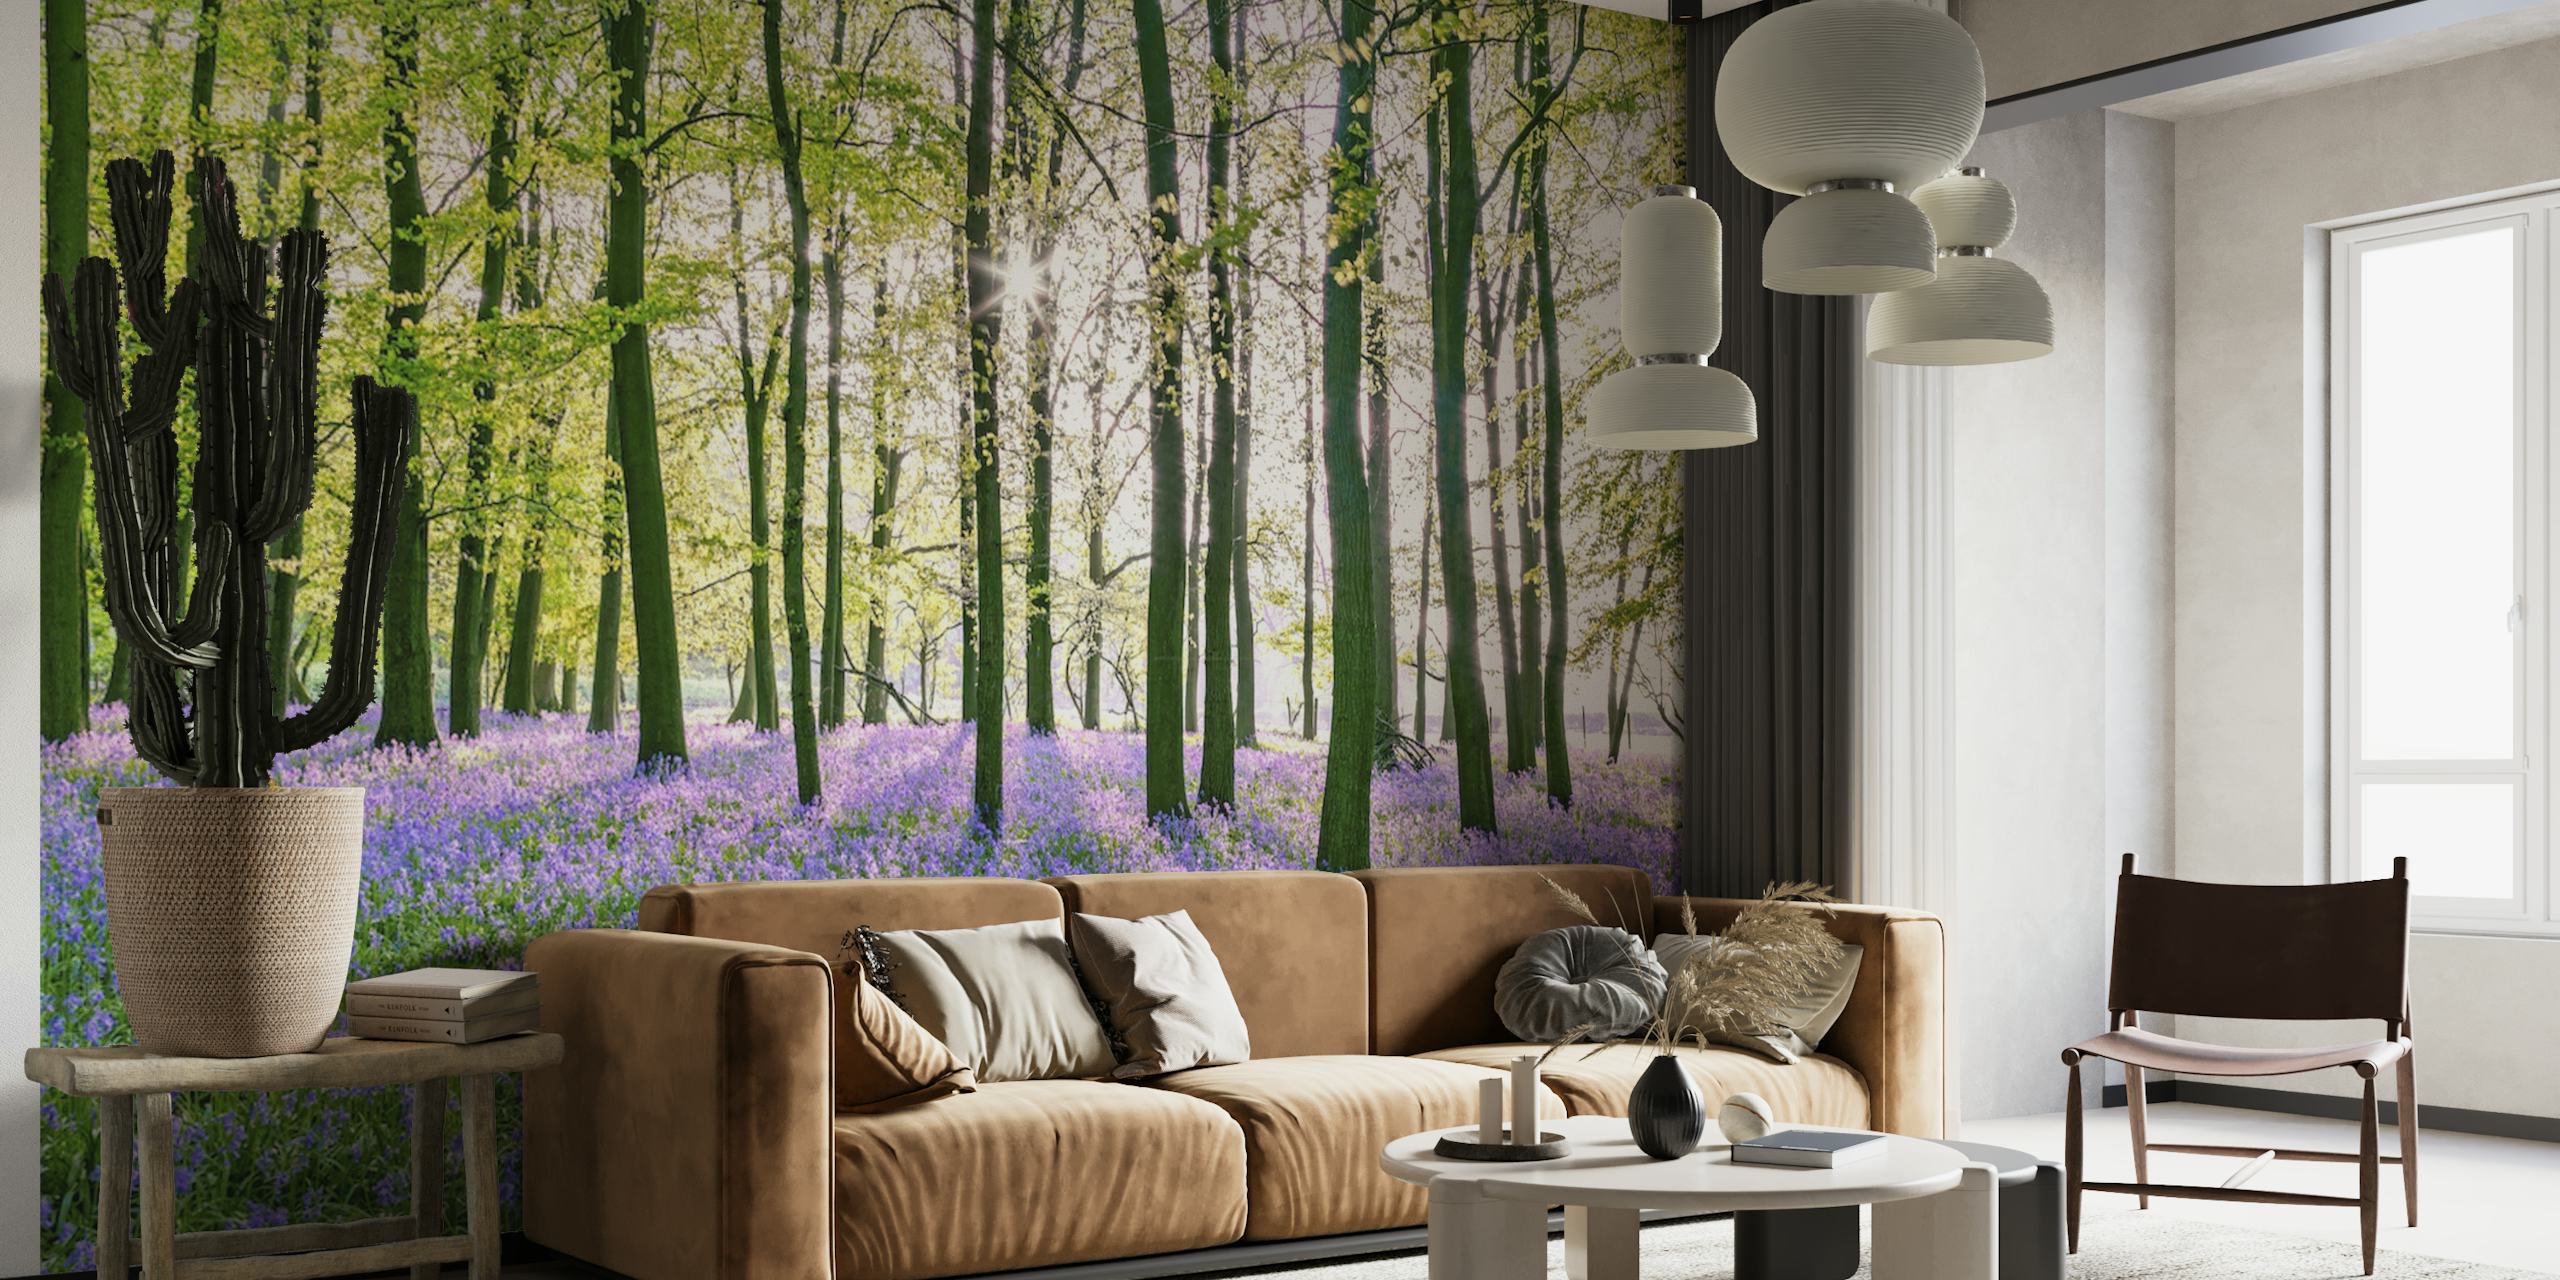 Spokojna fototapeta z lasem dzwonkowym z bujnym zielonym baldachimem i żywymi fioletowymi kwiatami pokrywającymi dno lasu.